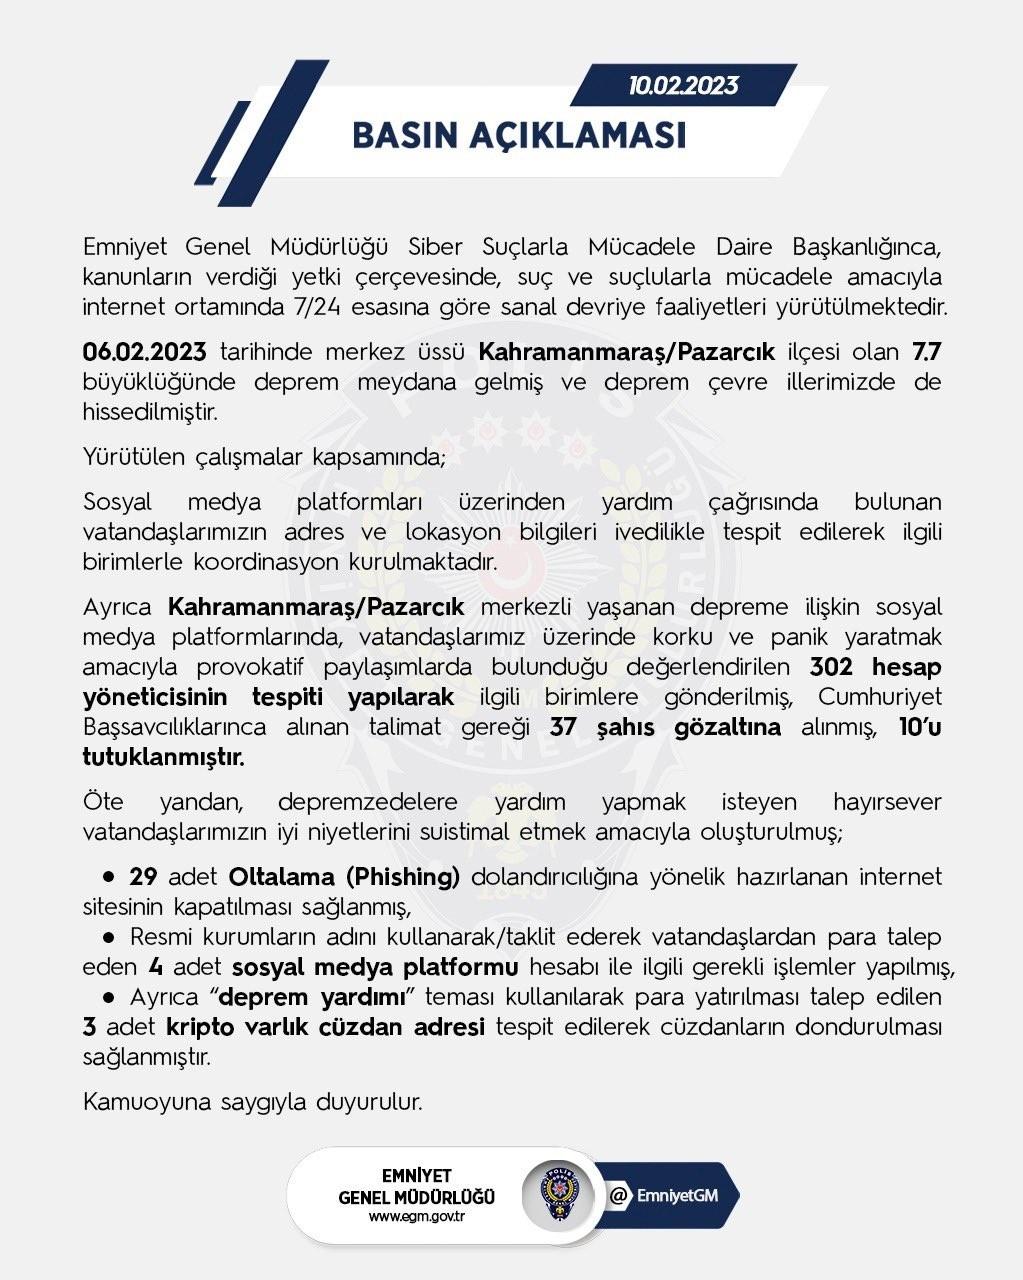 Türk polisi 7 gün 24 saat esasına göre sanal devriyelerini sürdürüyor